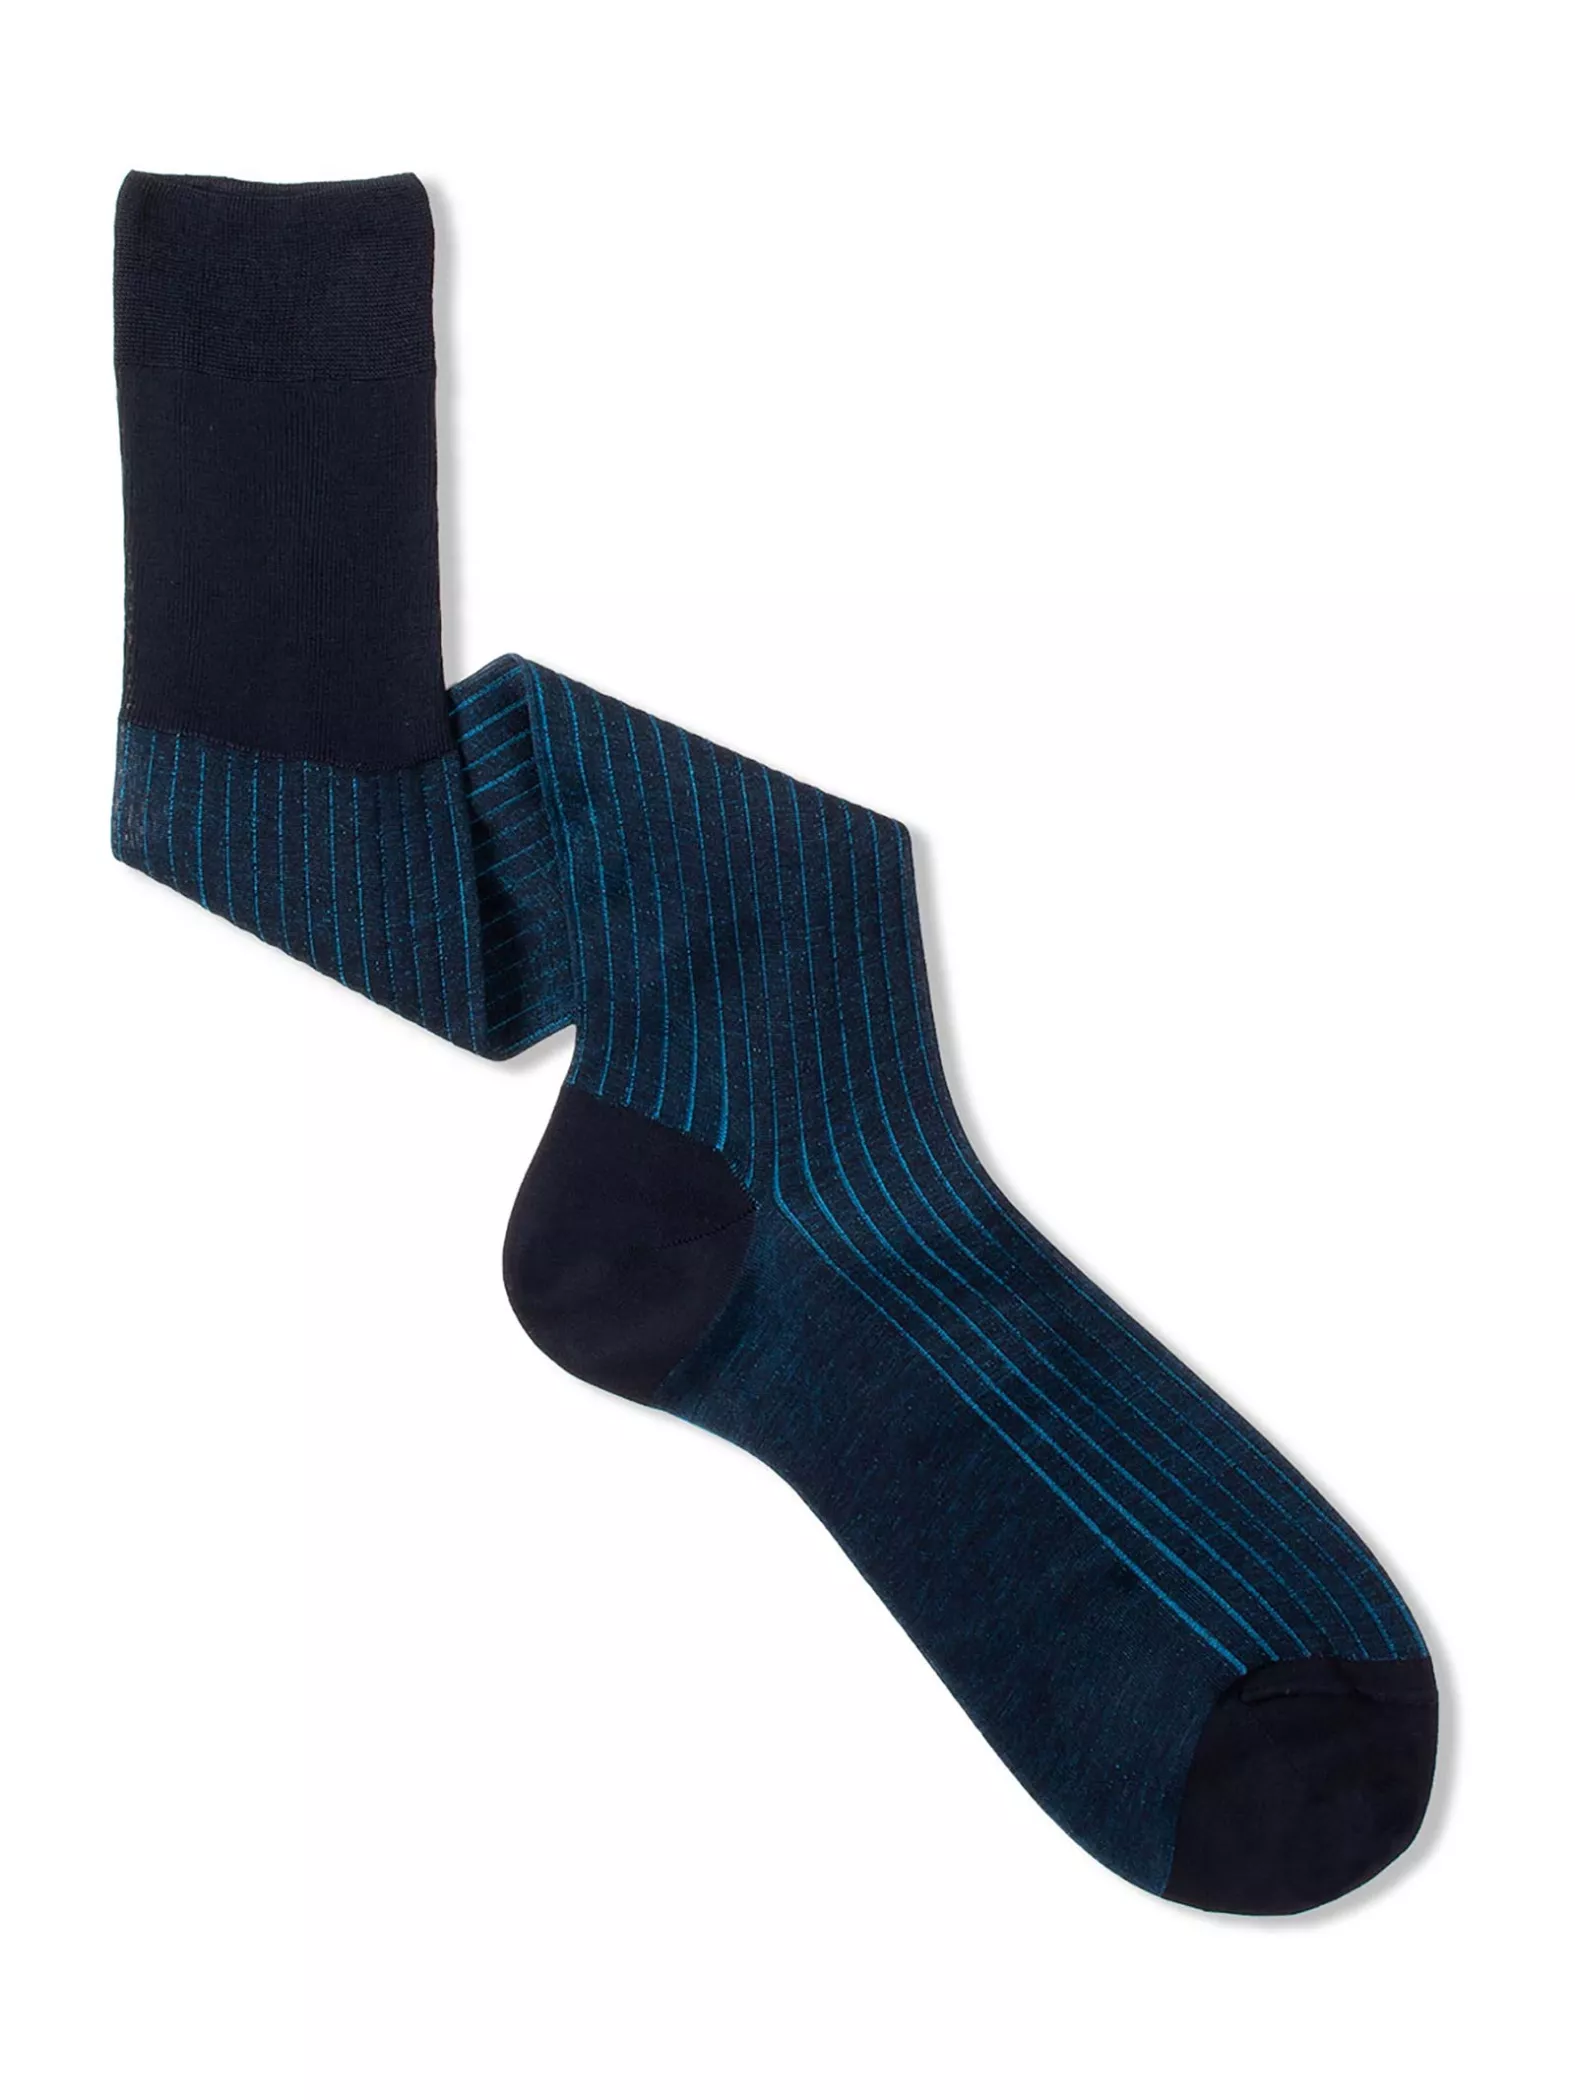 Classic Rib Vanisè Men's Knee High Socks Filo di Scozia cotton